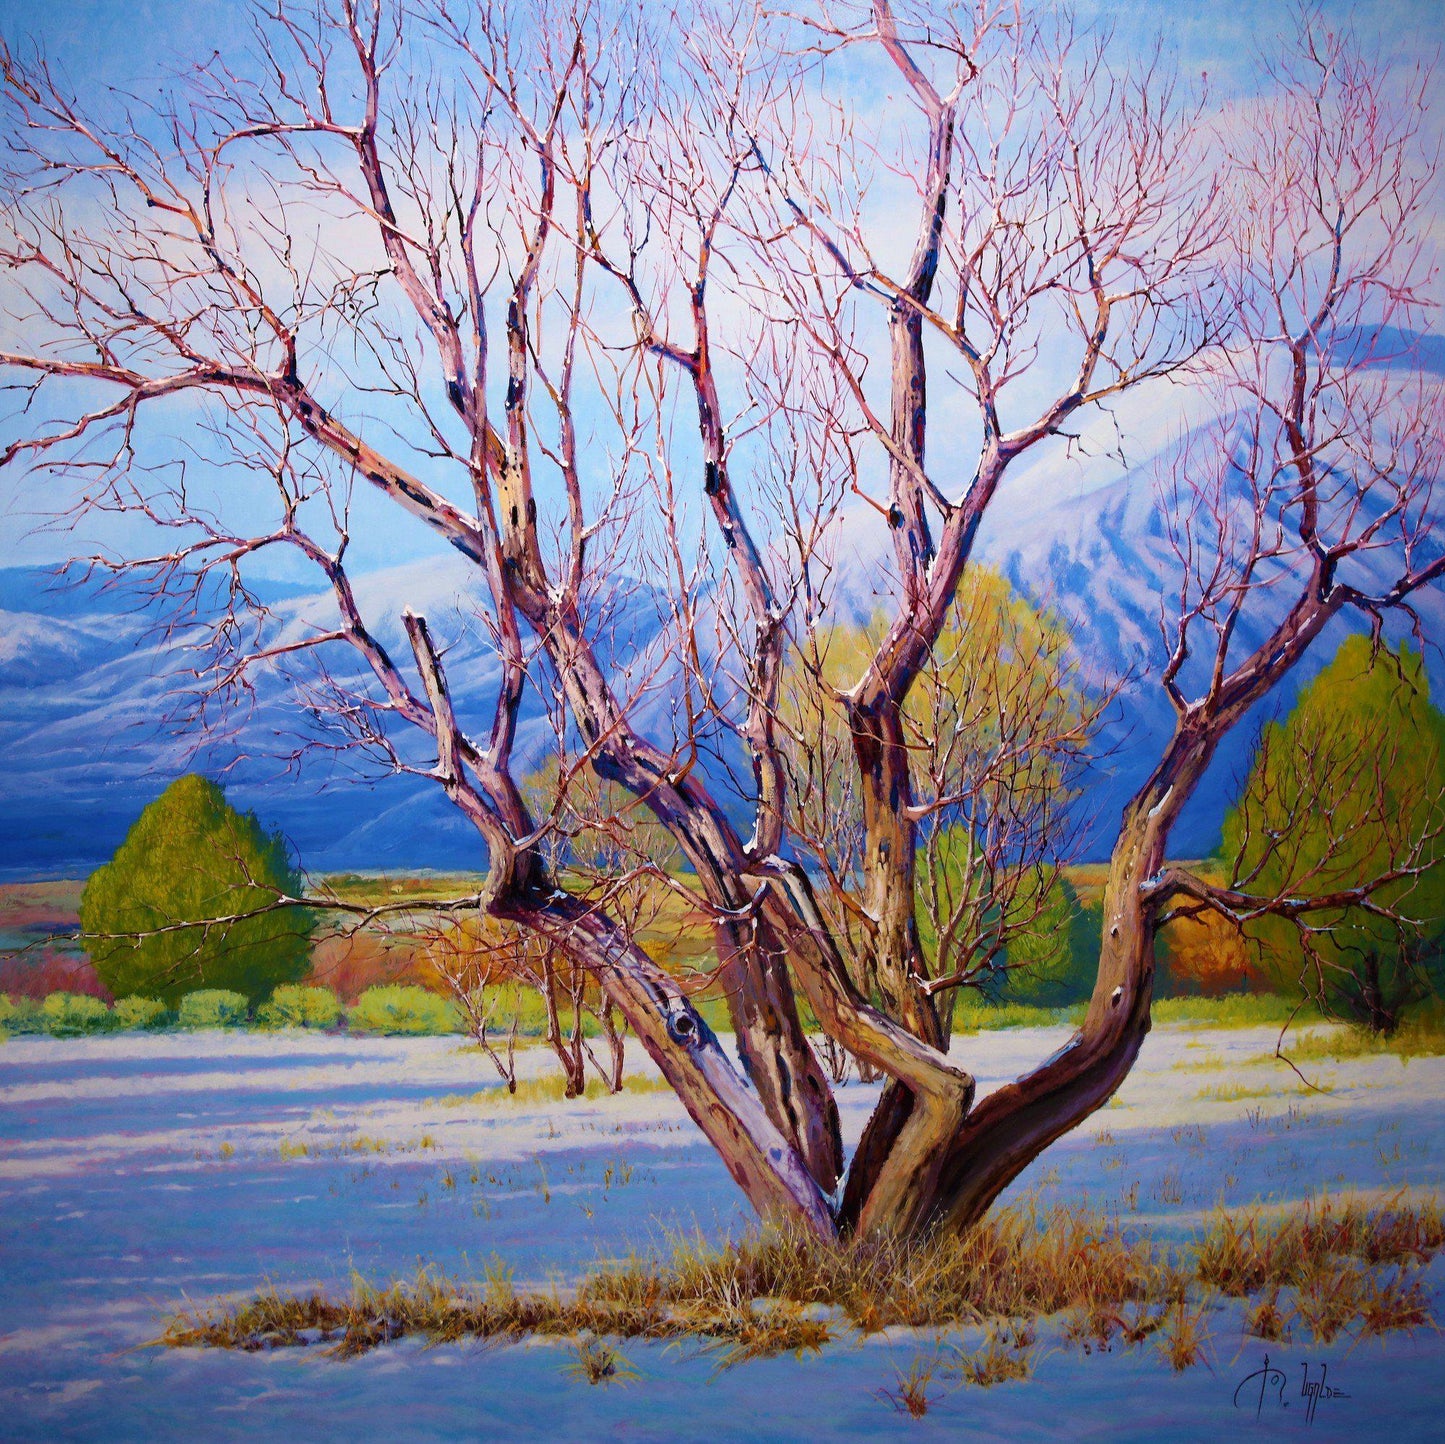 Apple Tree In Winter-Painting-Roberto Ugalde-Sorrel Sky Gallery